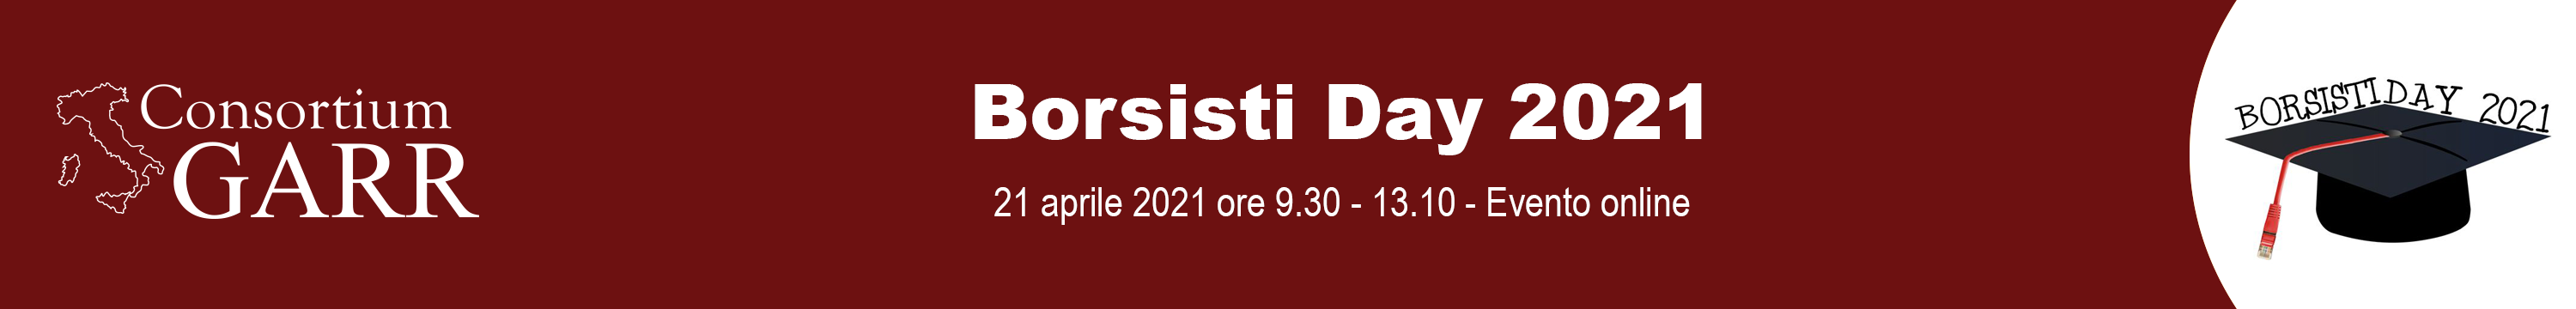 2021 Borsisti Day